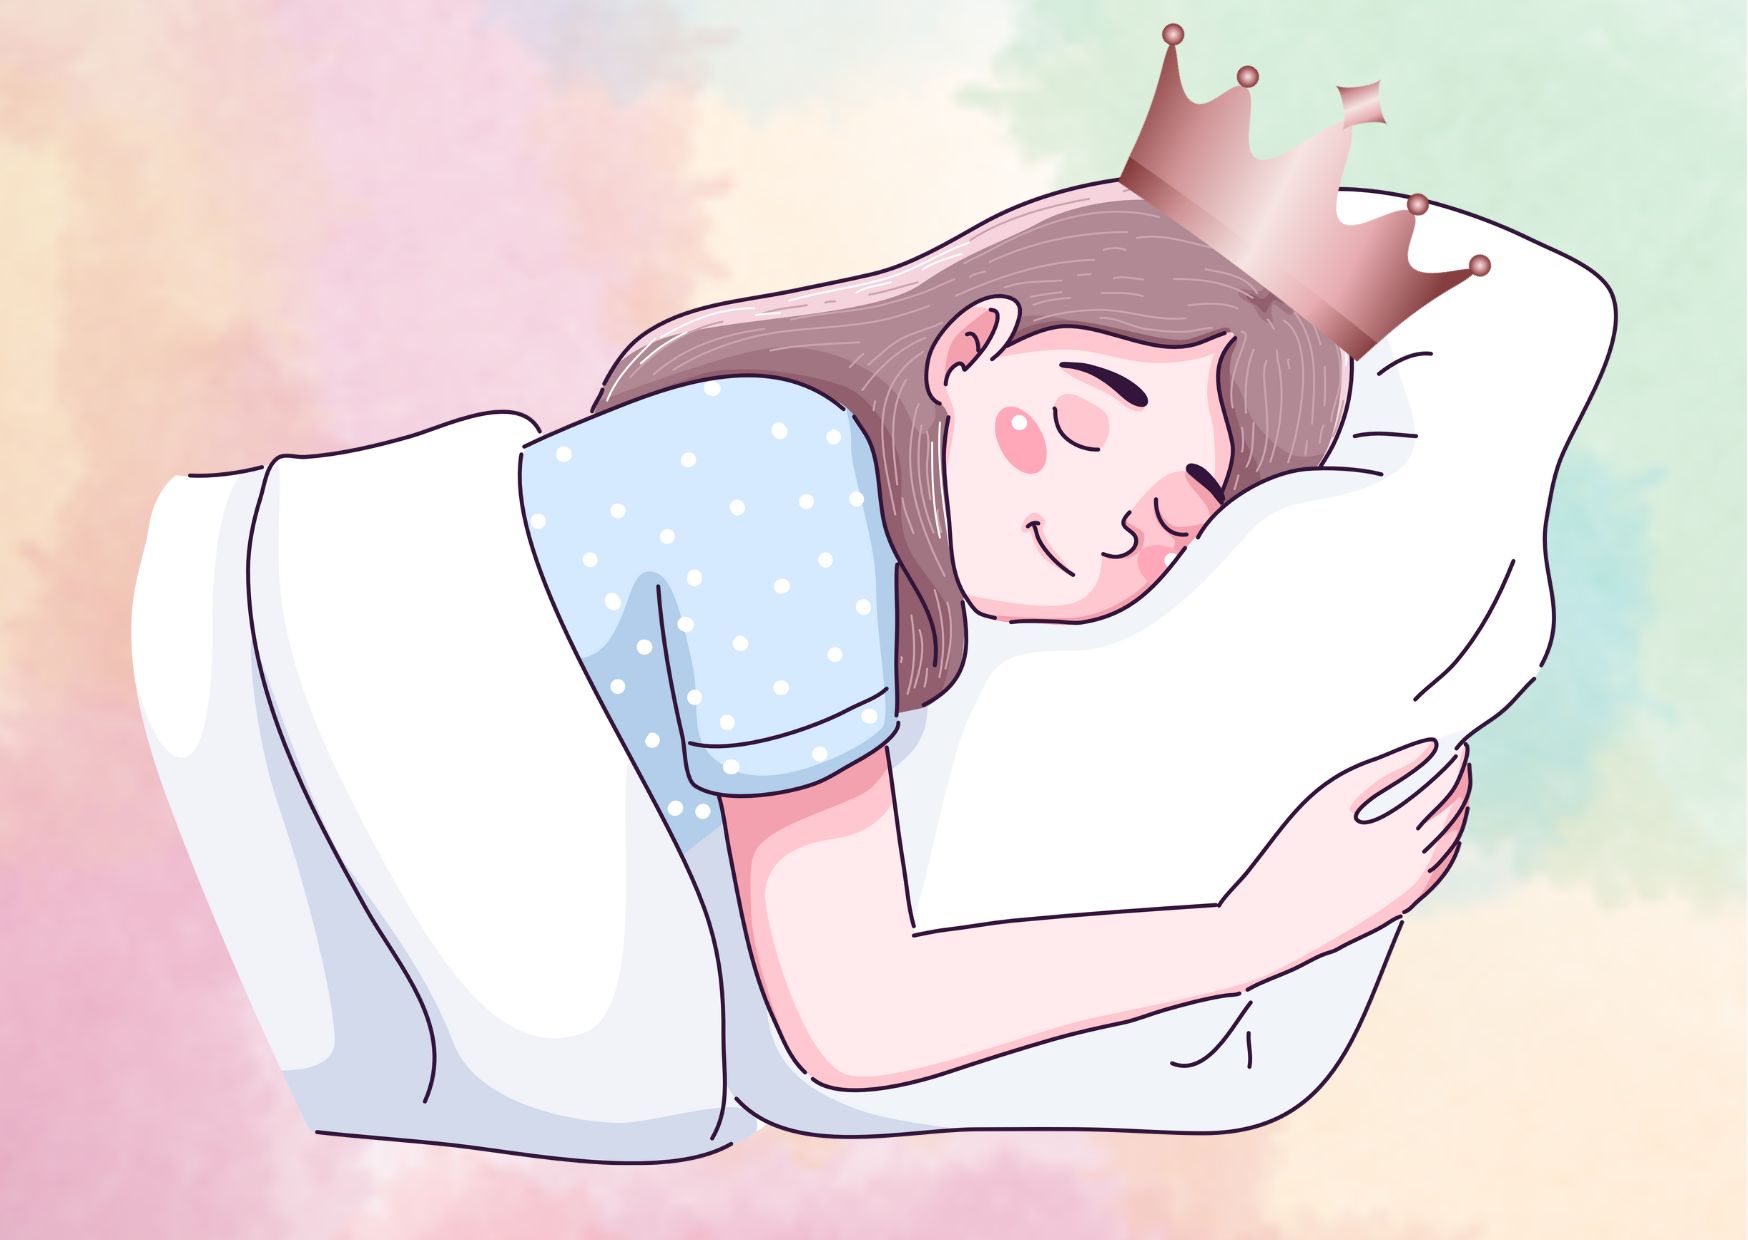 Pillow Princess